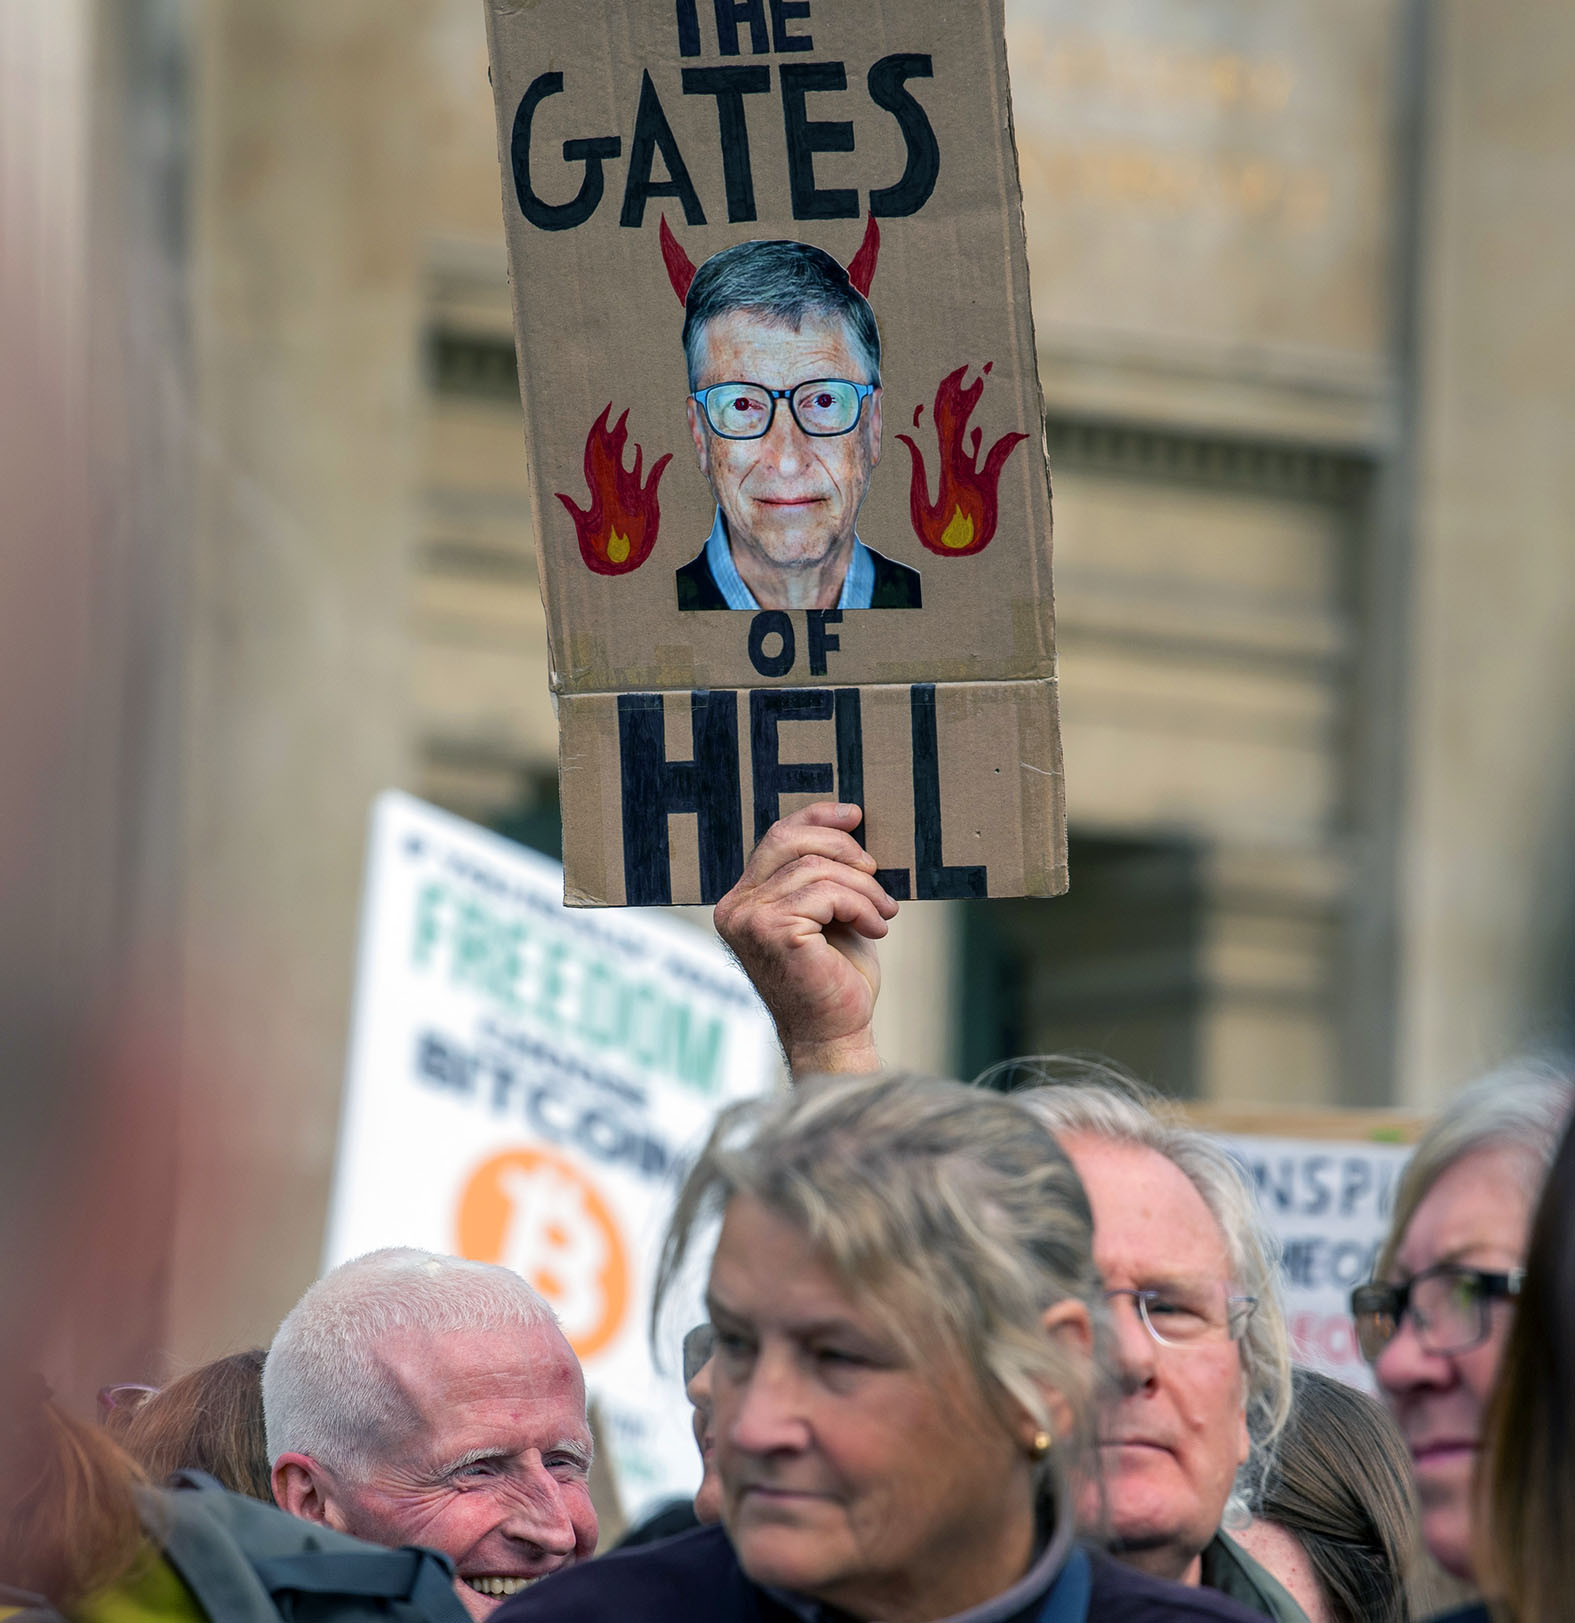 Видеоролик, обвиняющий Гейтса в намерении `уничтожить 15 процентов жителей Земли`, набрал миллионы просмотров в YouTube. Фото: Dave Rushen/Global Look Press/Keystone Press Agency